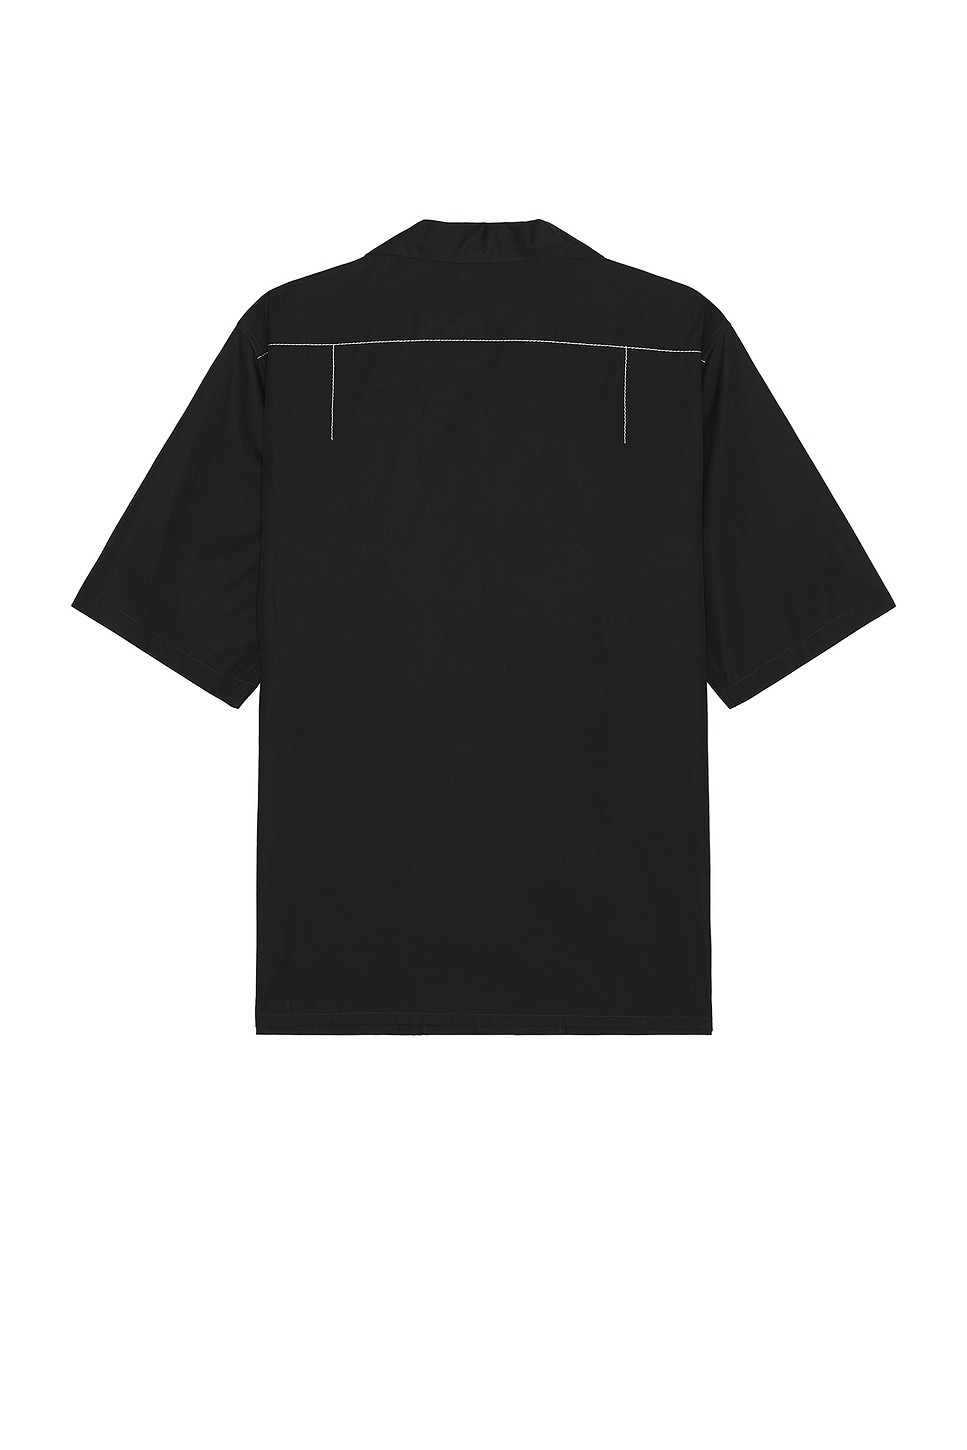 Stitching Short Sleeve Shirt - 2